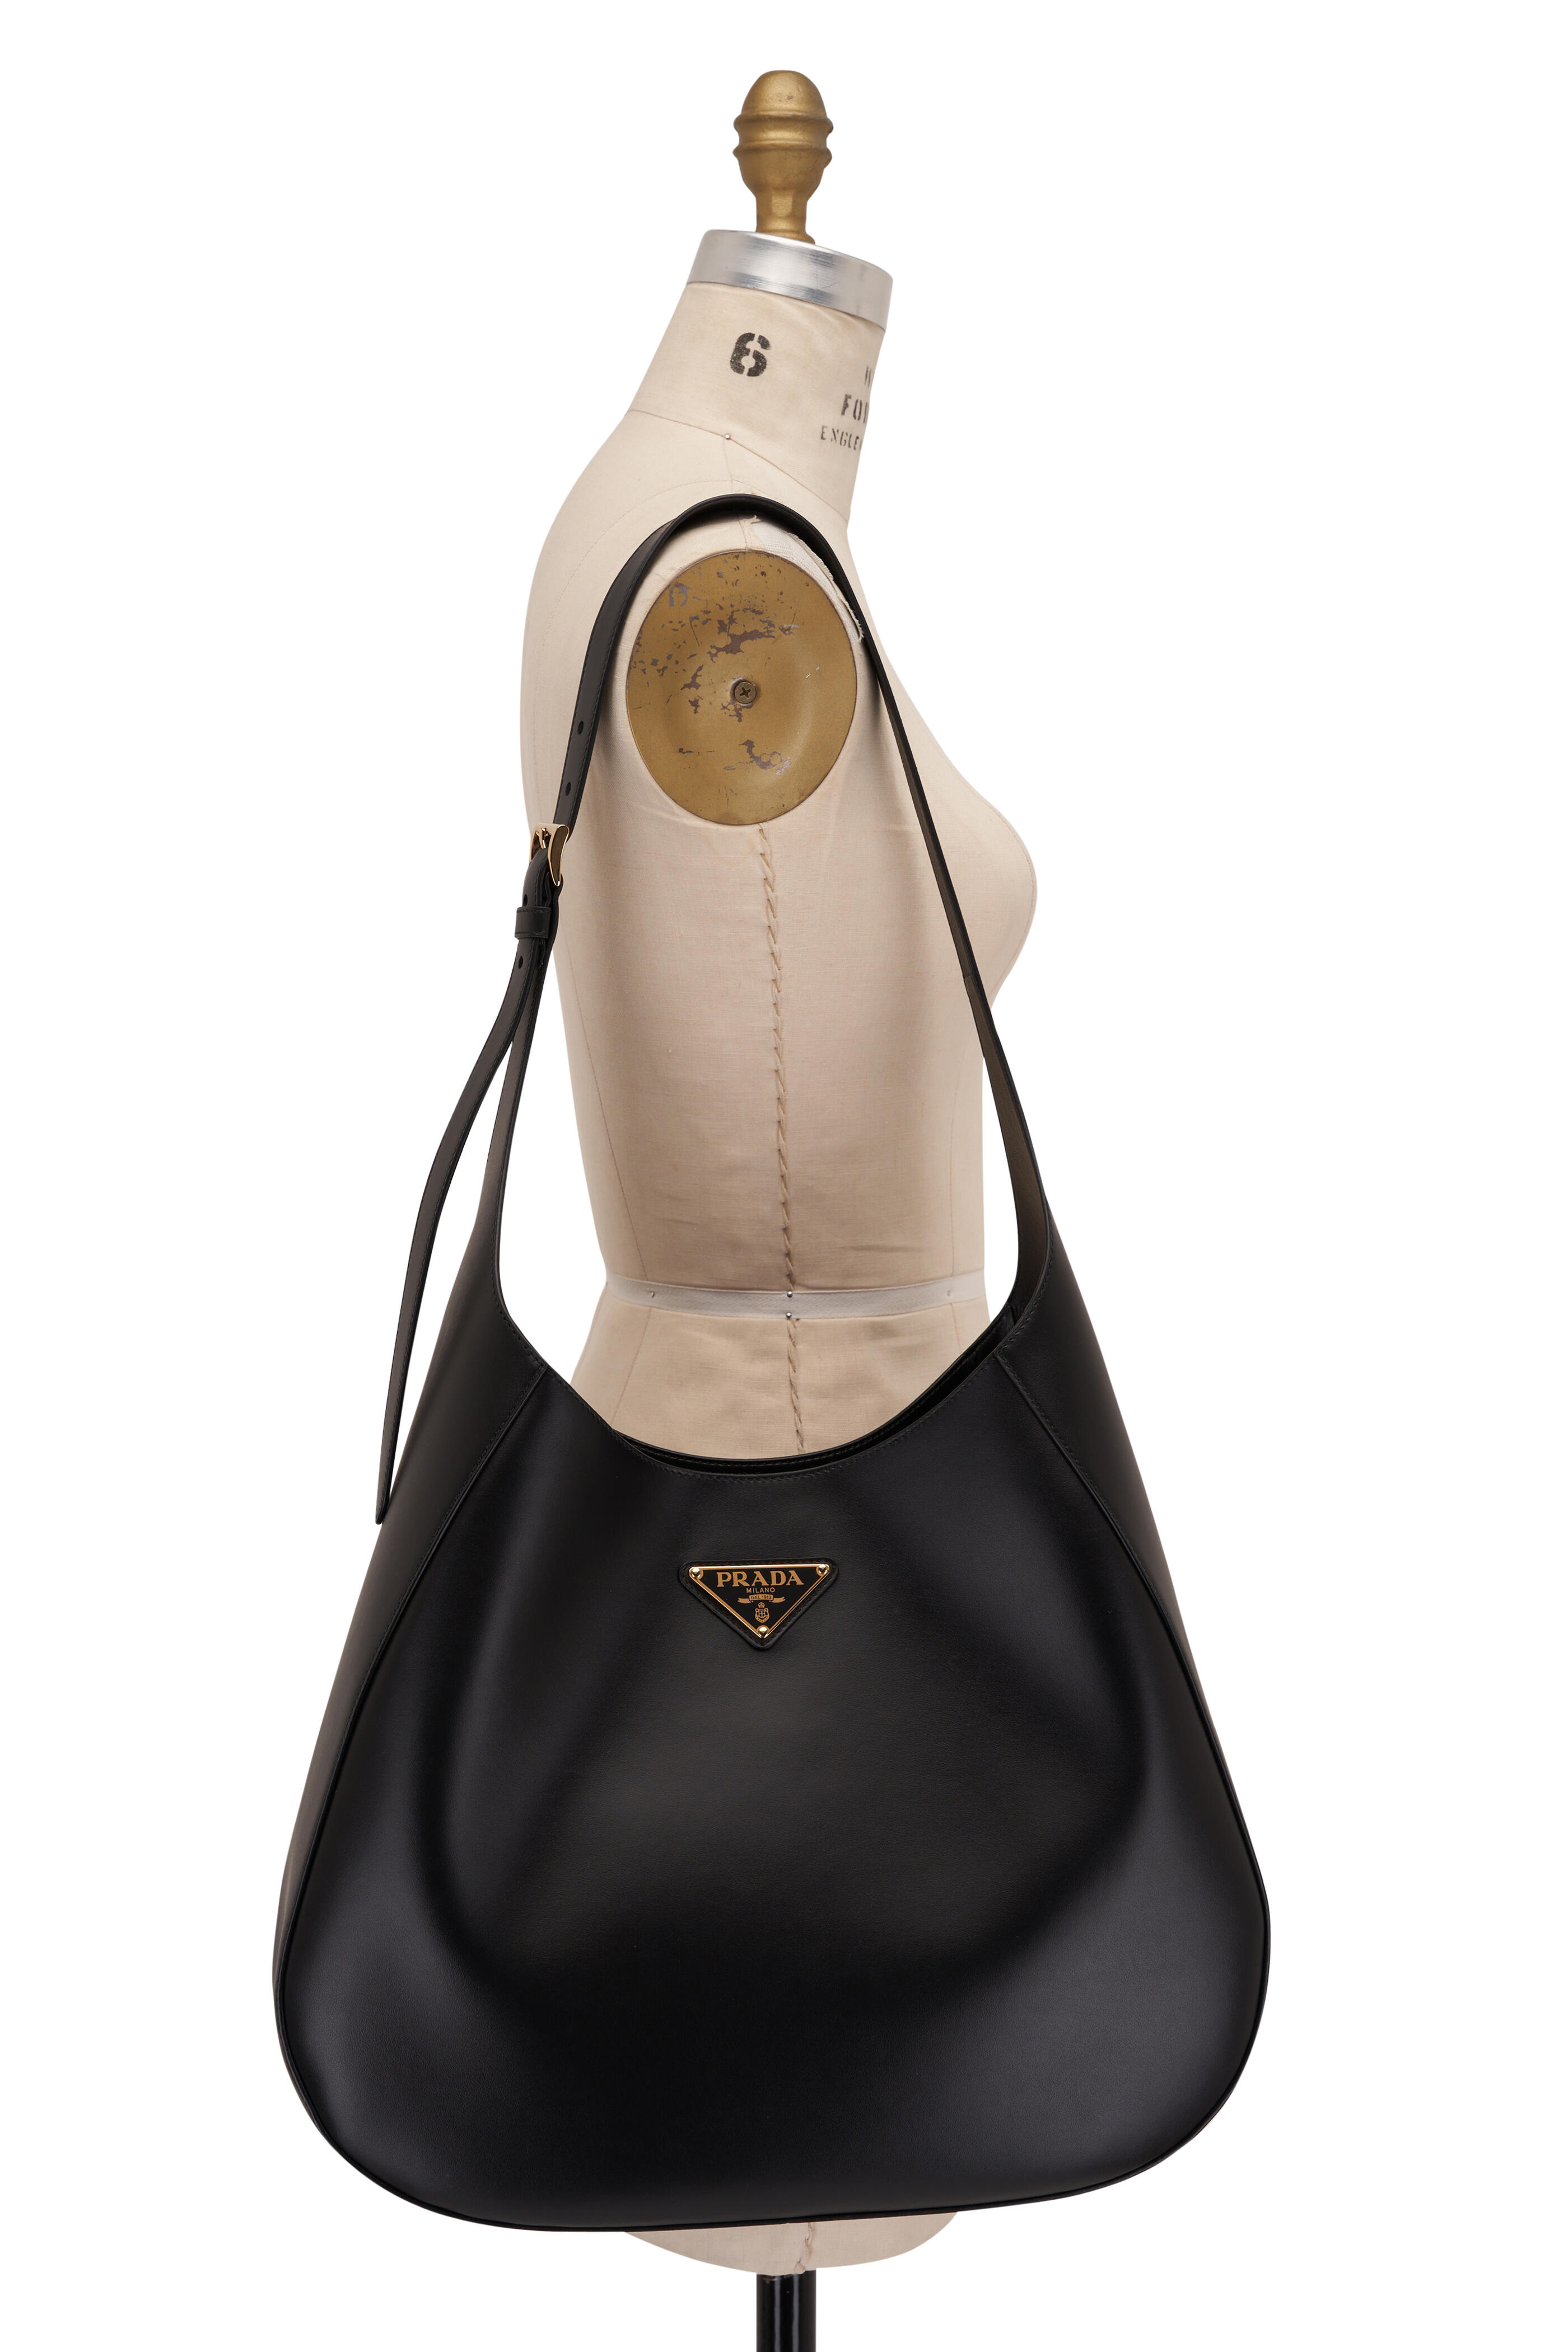 Prada Leather Shoulder Bag - Black for Women